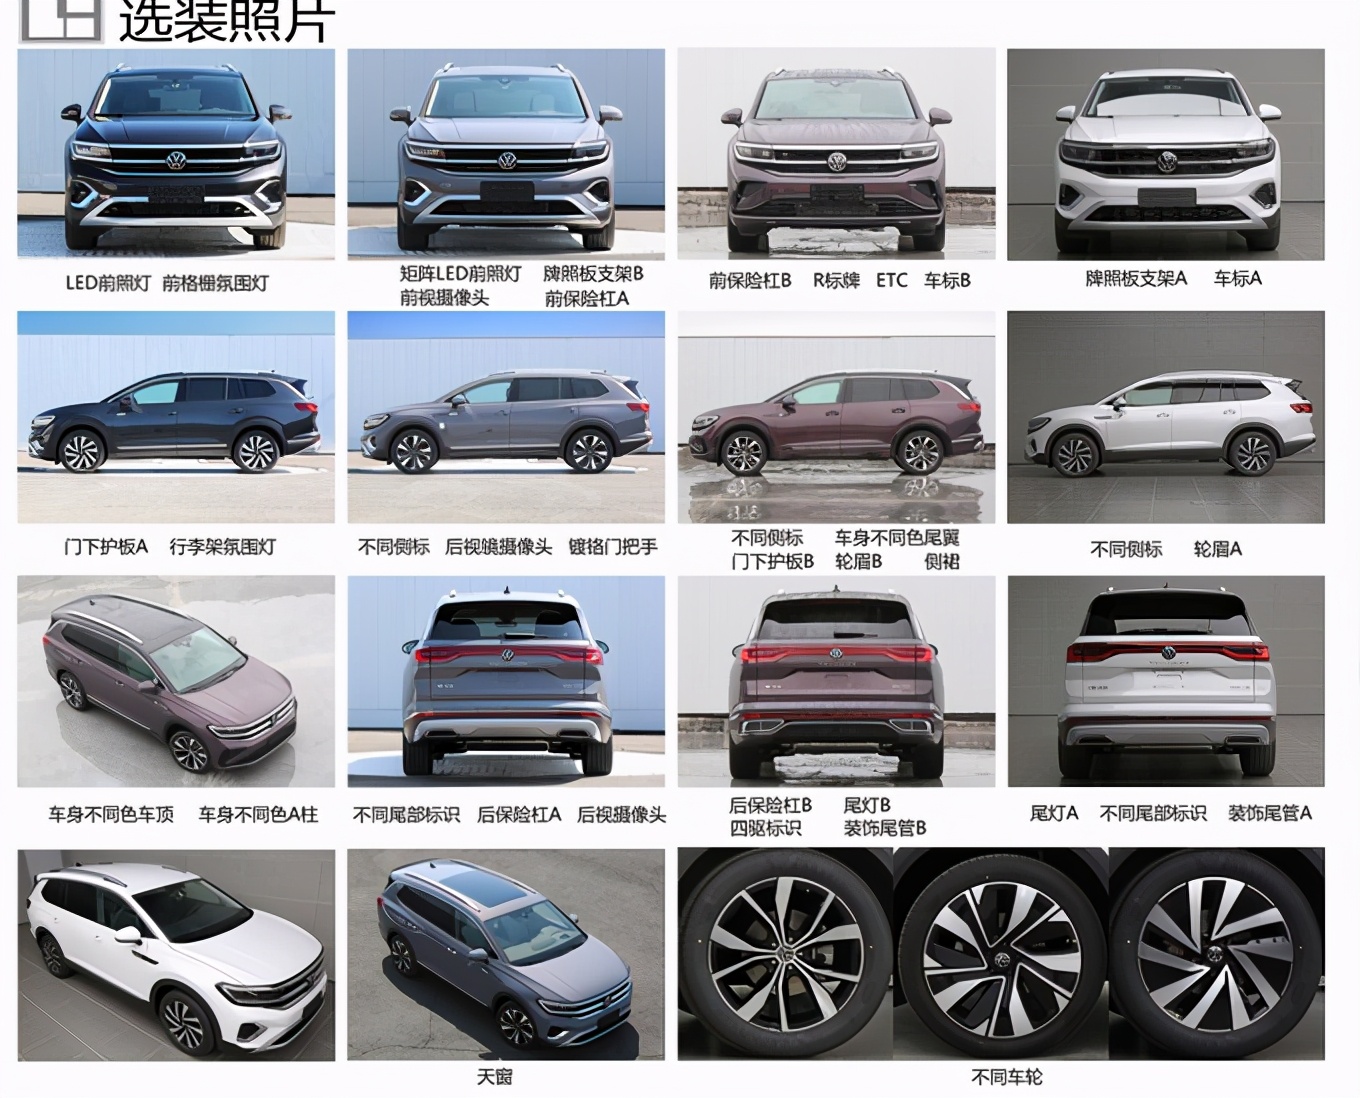 一汽-大众首款大型SUV Talagon申报图曝光 或上海车展发布